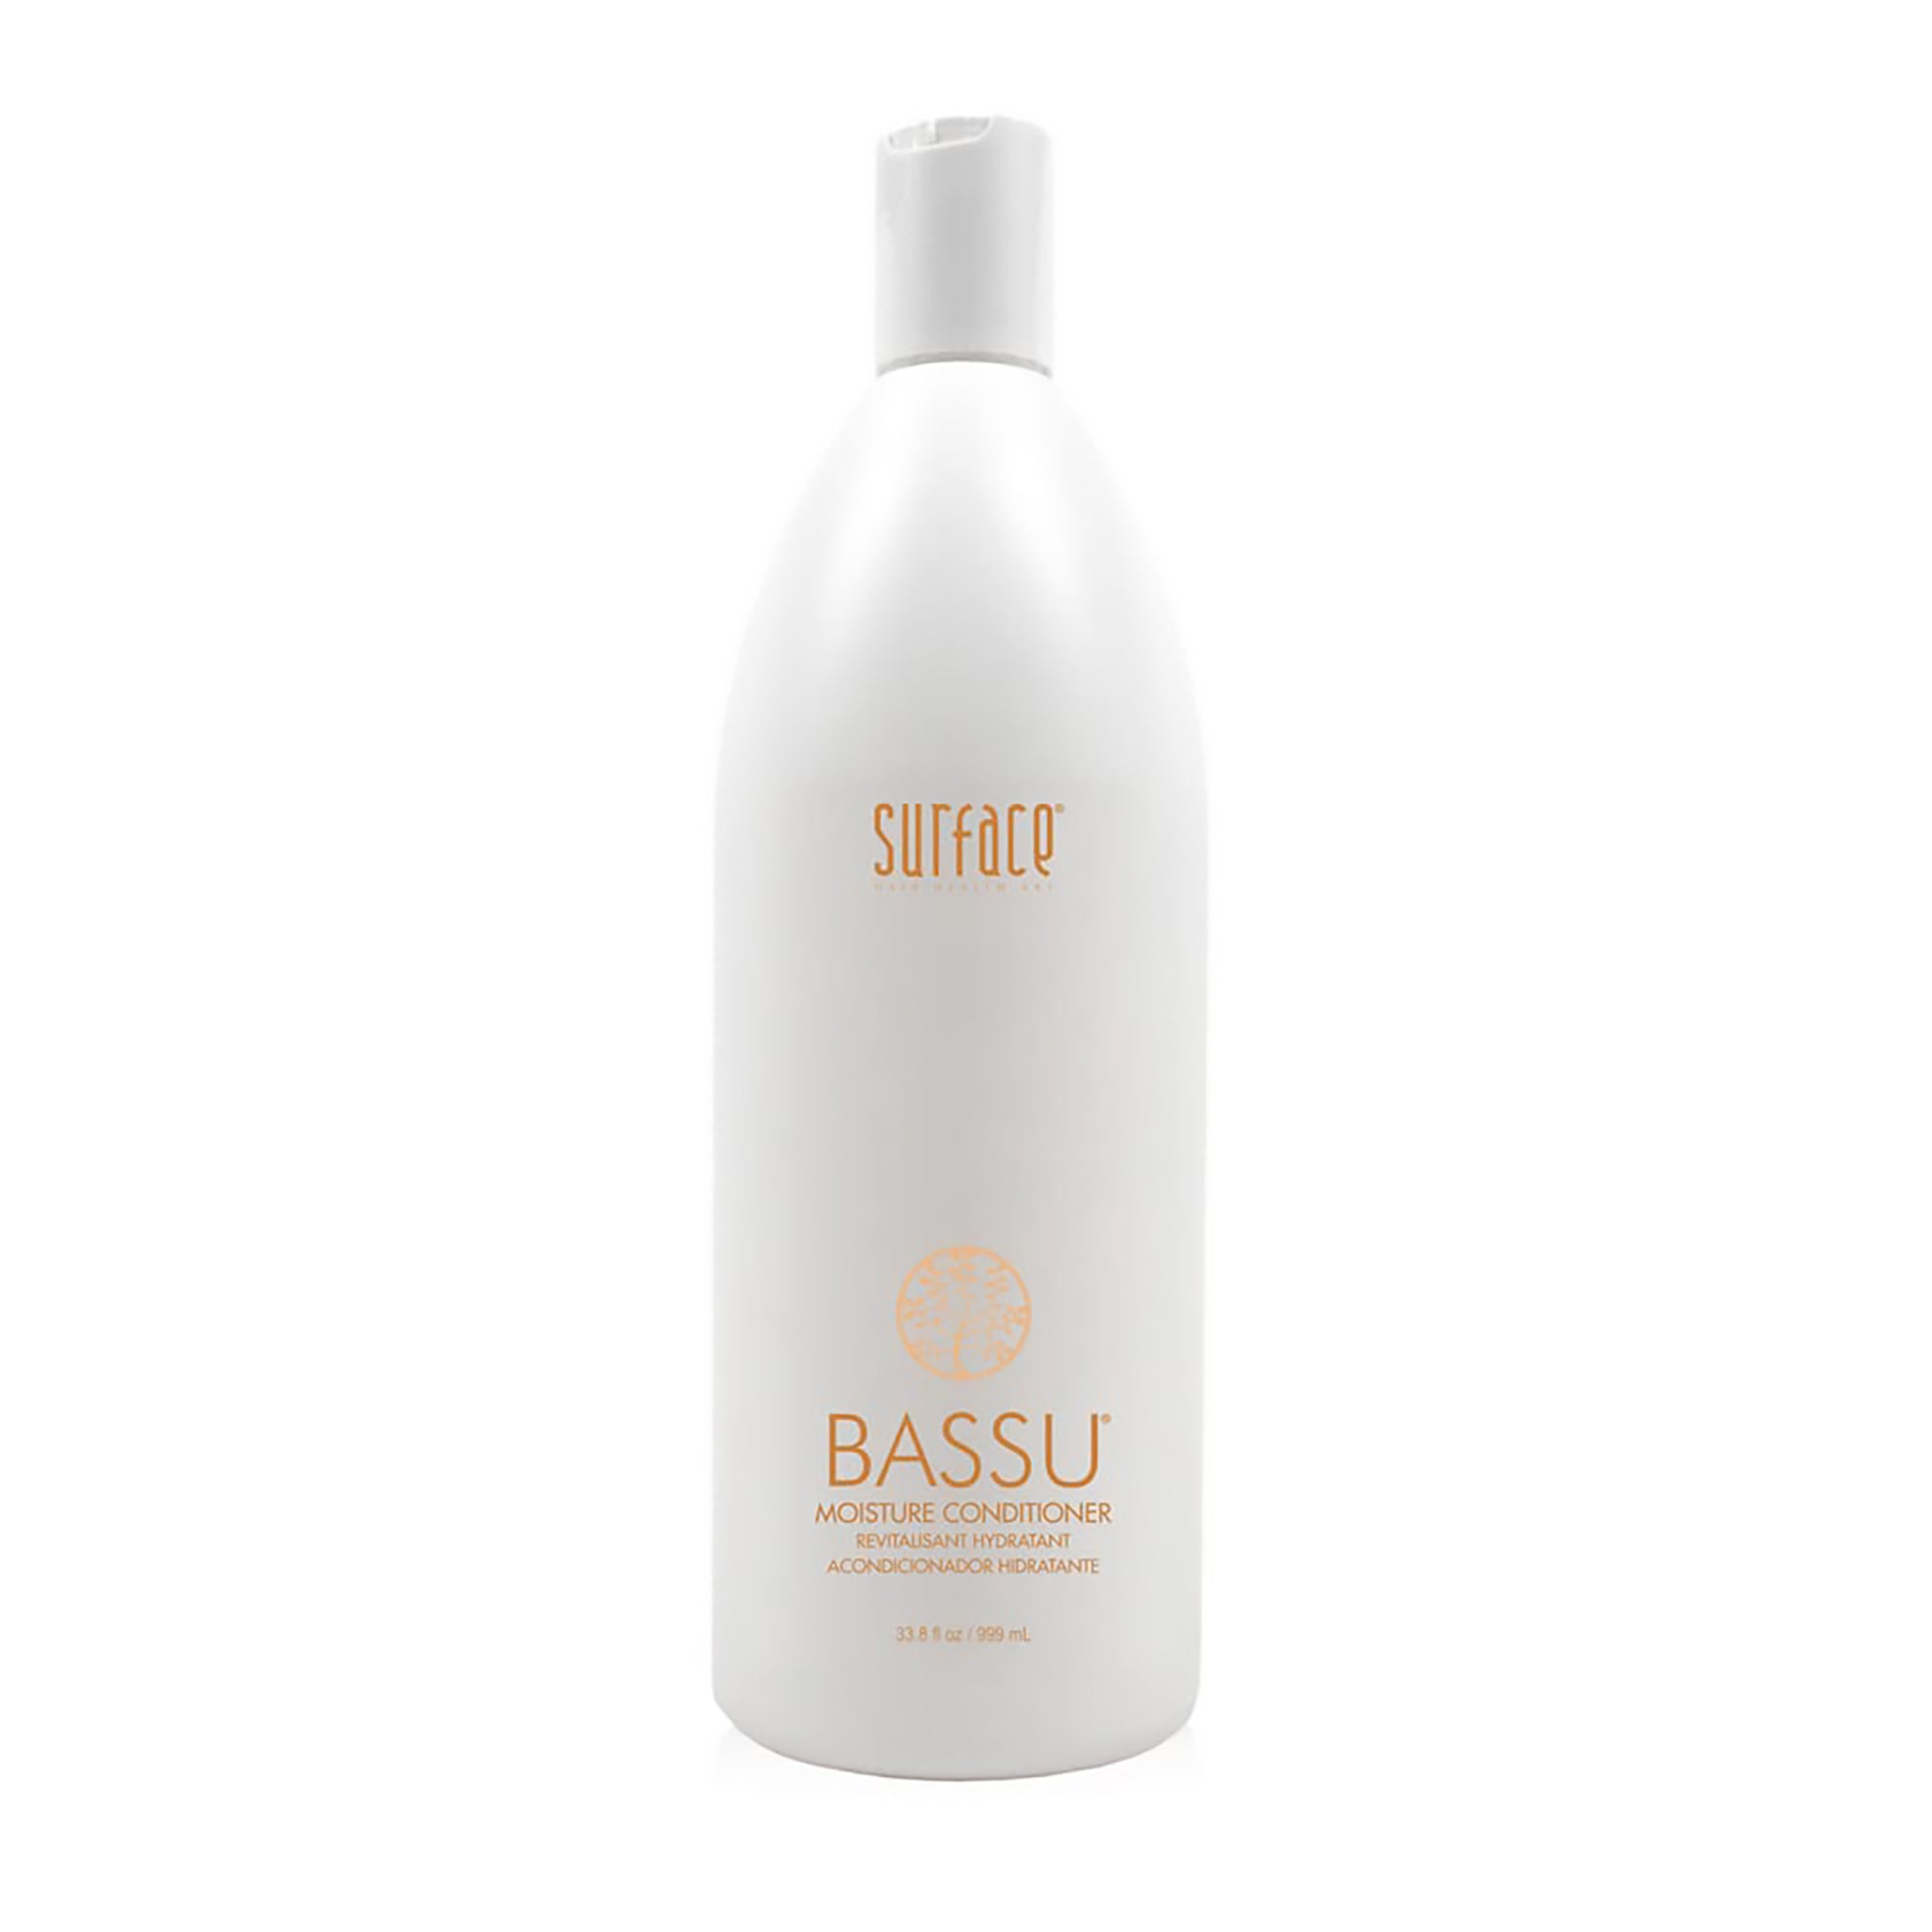 Surface Bassu Moisture Shampoo and Conditioner Liter Duo / LITER